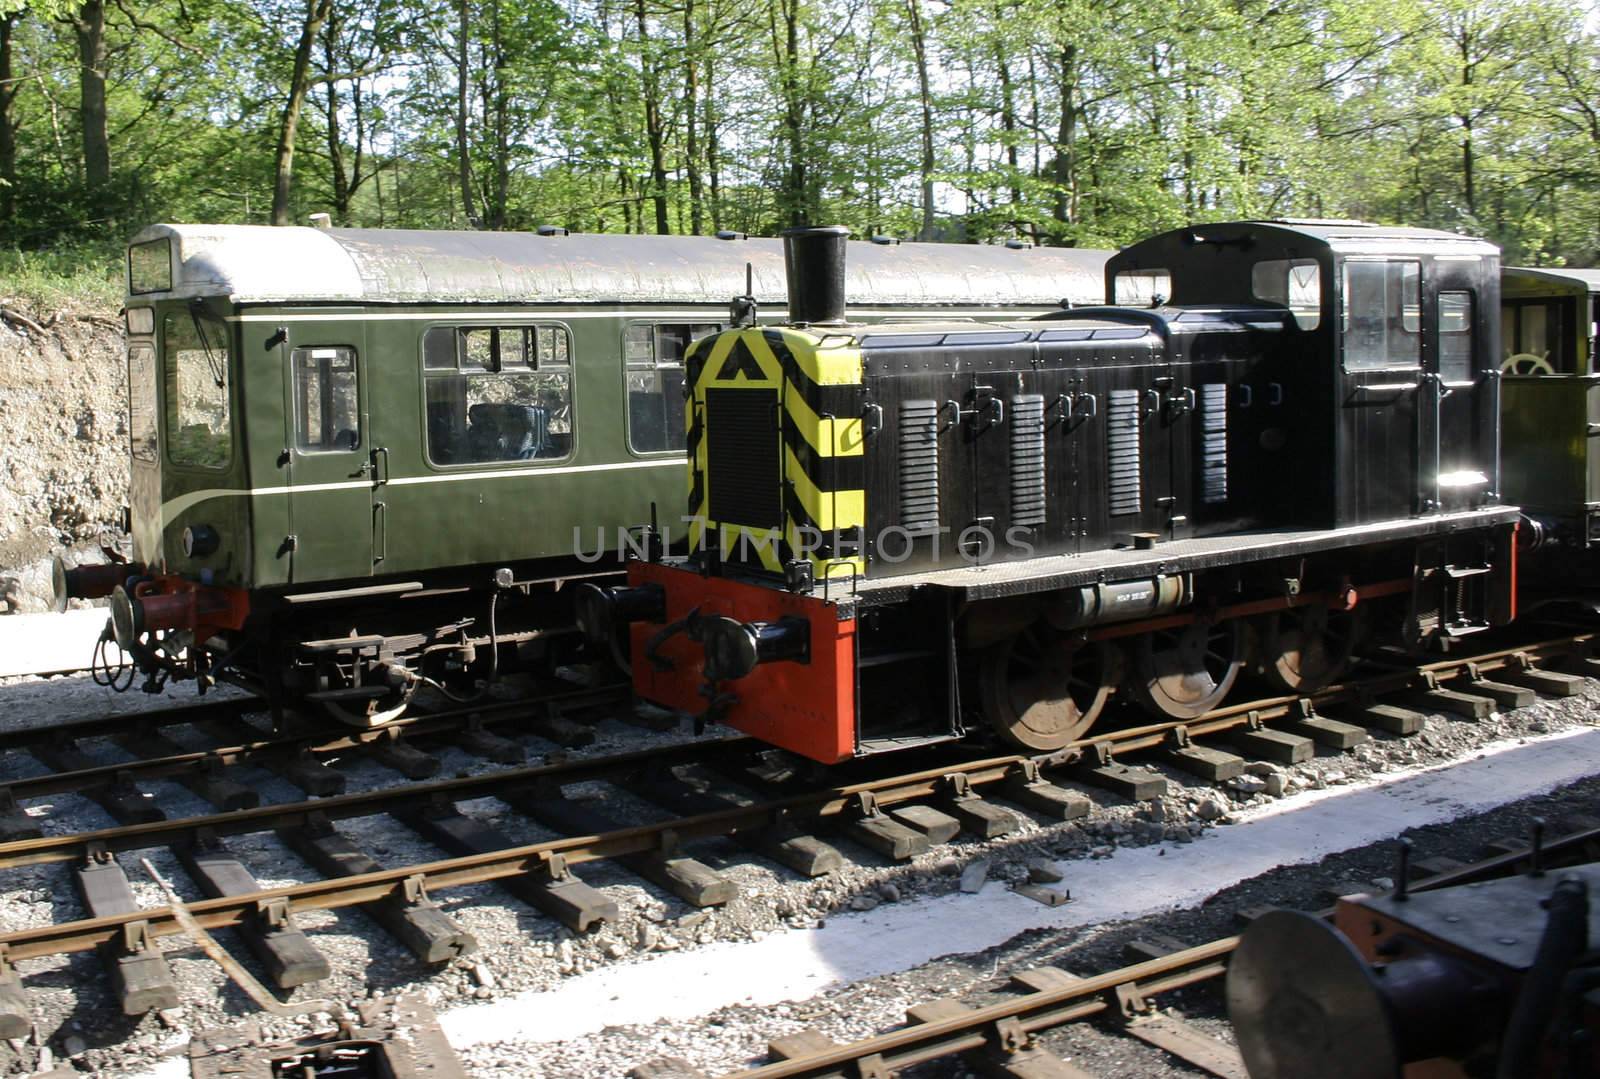 black diesel train and green diesel train